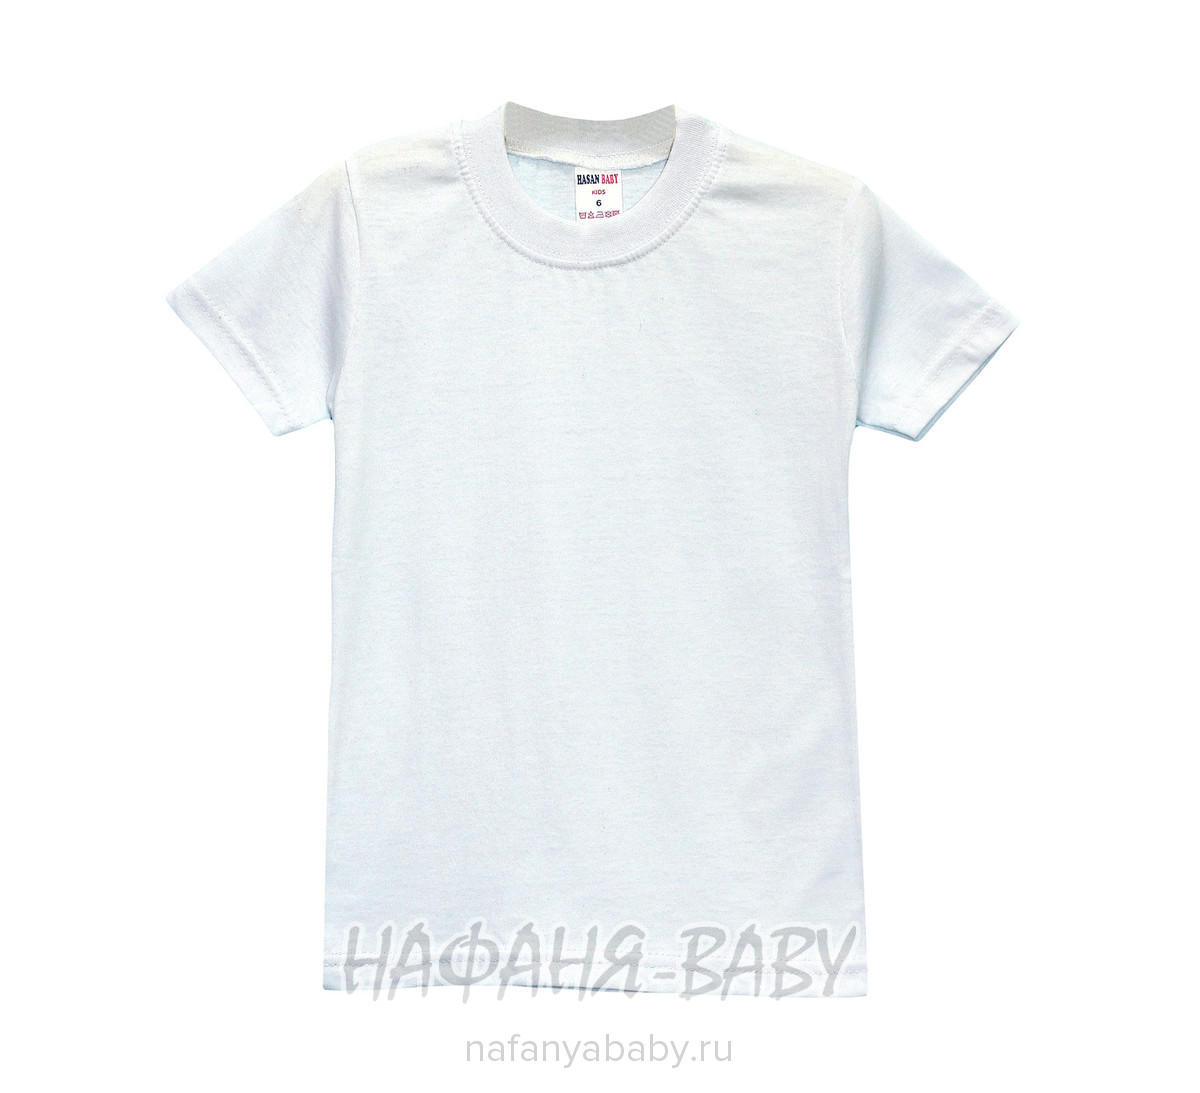 Детская белая футболка HASAN арт: 9029, 5-9 лет, 1-4 года, оптом Турция